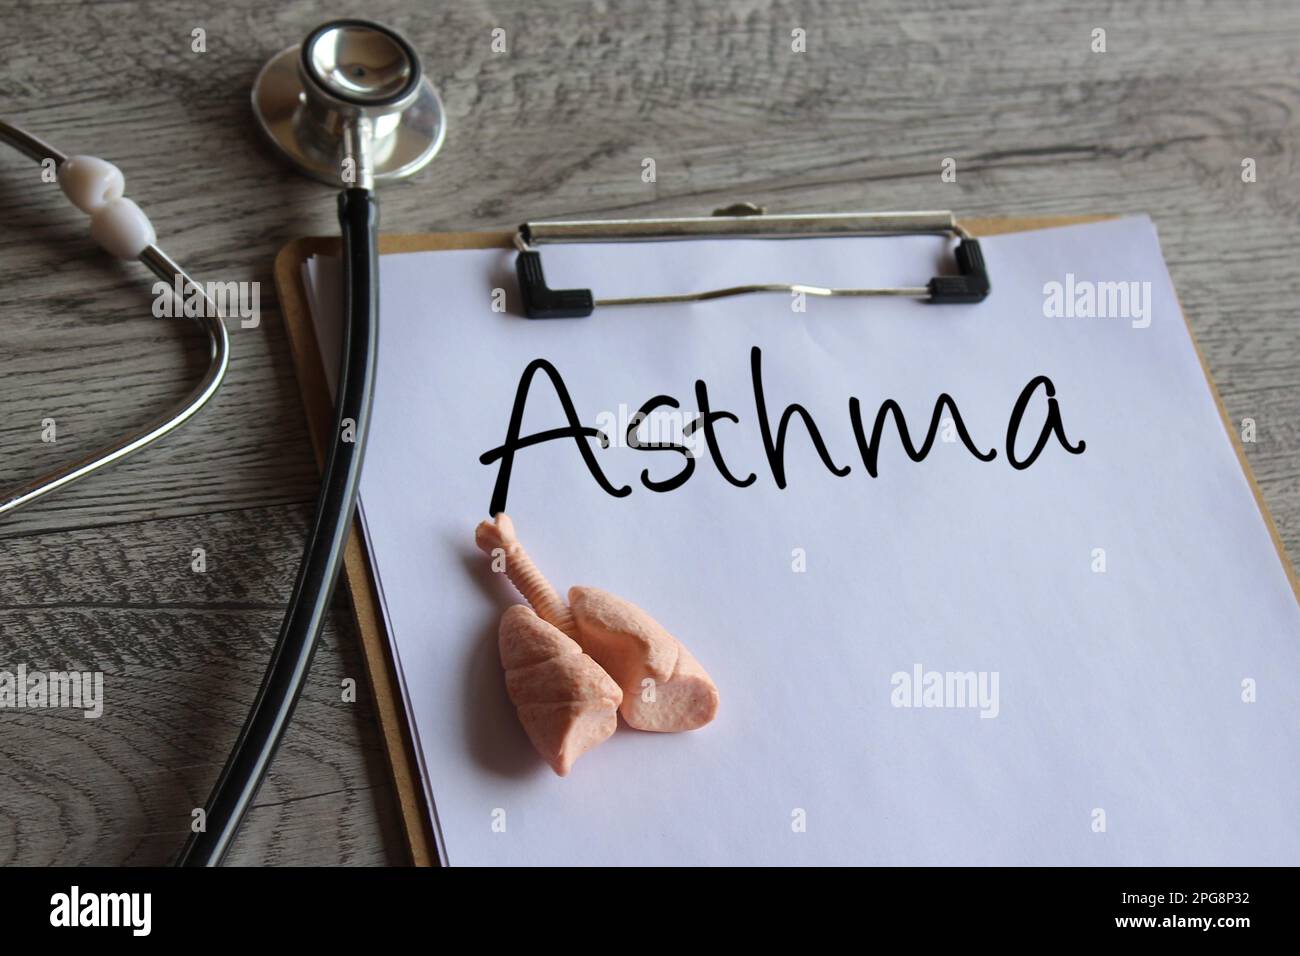 Stethoskop, menschliches Lungenmodell und Schreibbrett mit Text Asthma. Medizin- und Gesundheitskonzept Stockfoto